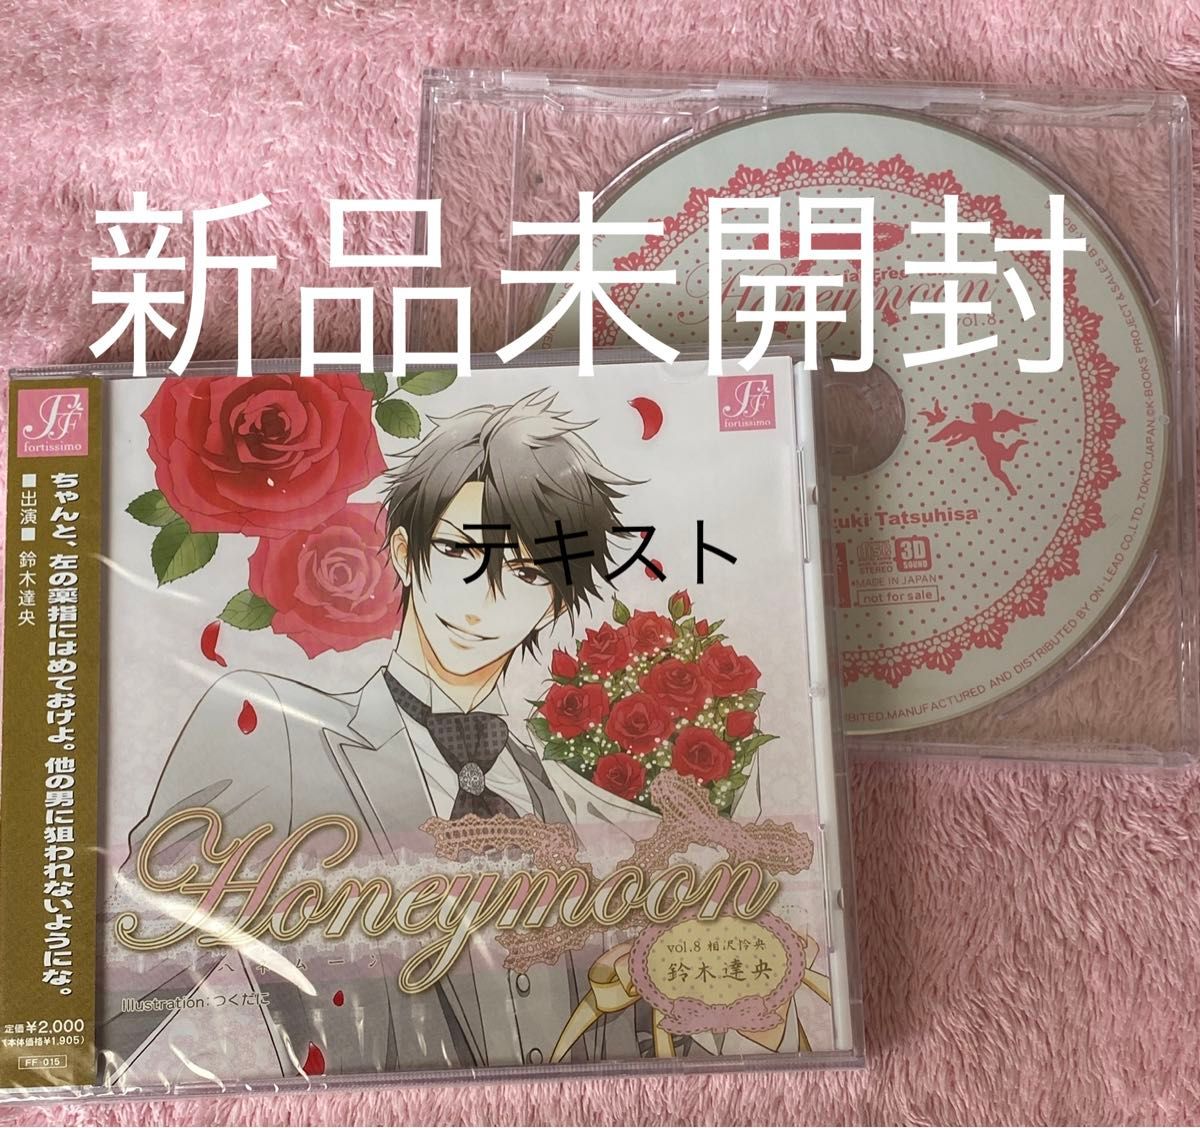 新品 ドラマCD Honeymoon vol.8 相沢怜央 特典CD付 鈴木達央